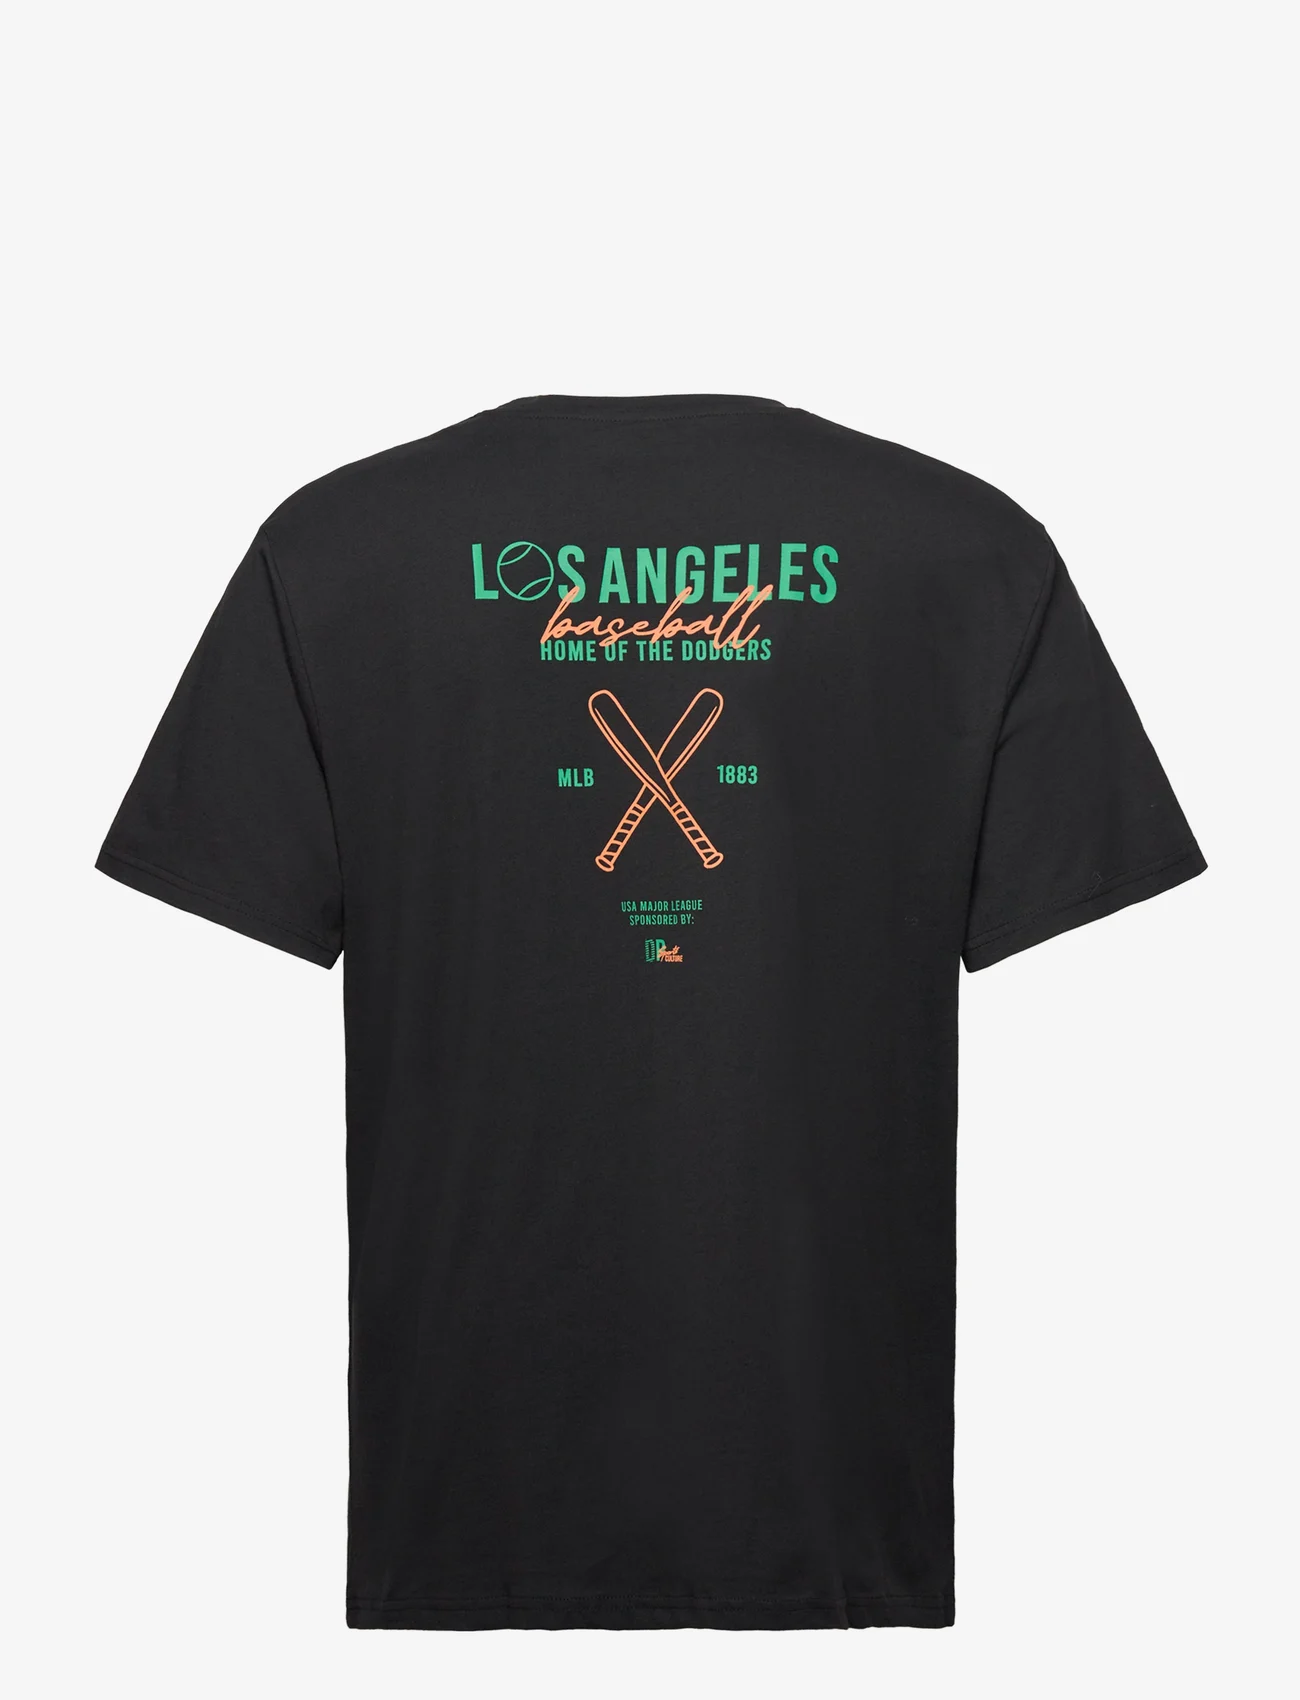 Denim project - DPLos Angeles T-shirt - lägsta priserna - black - 1